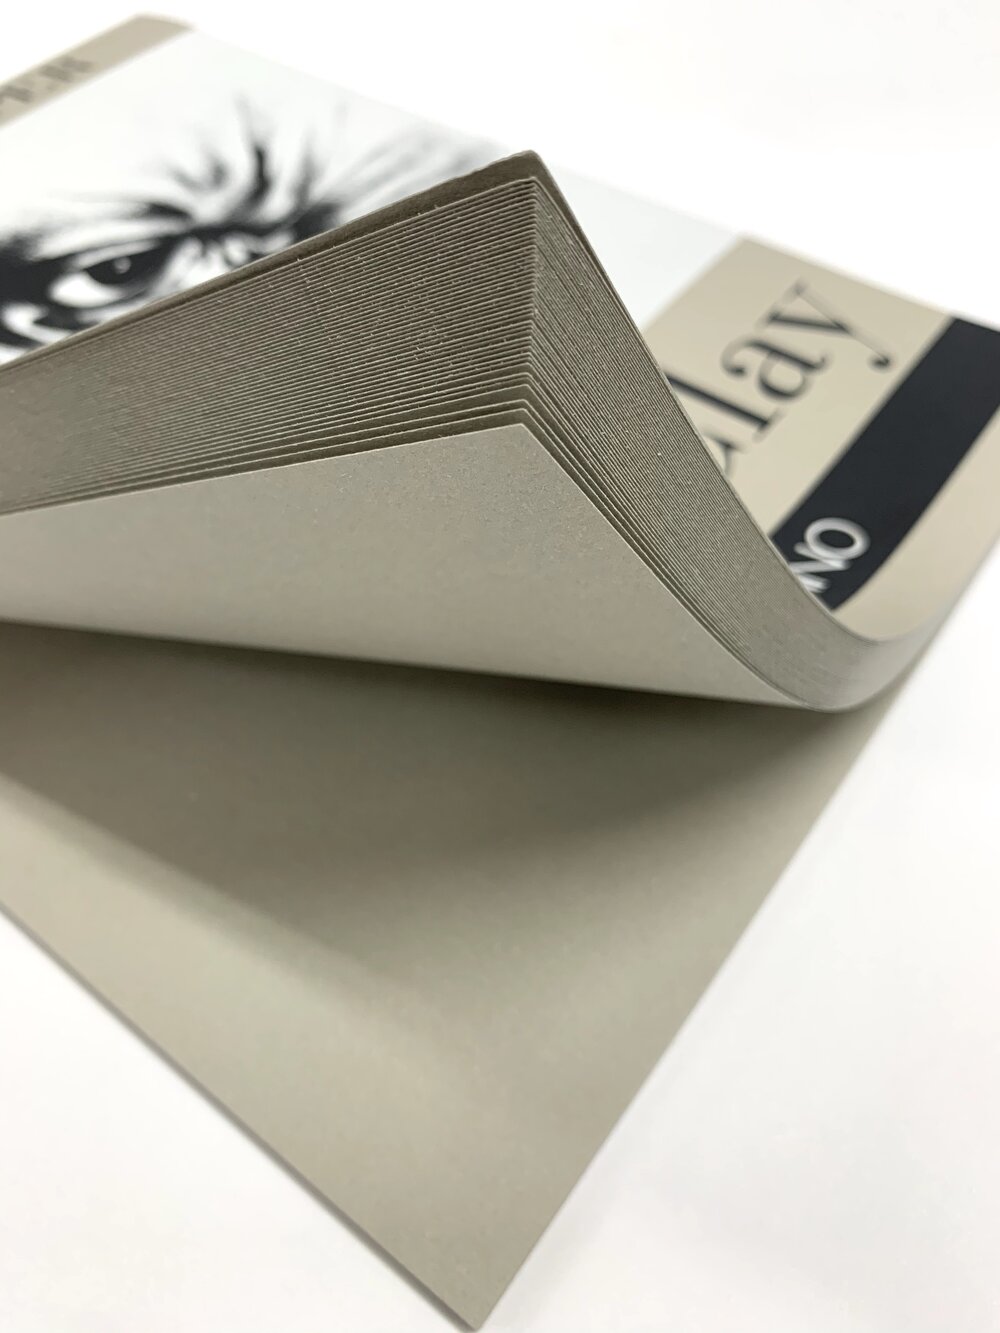 Fabriano Toned Paper Pad Clay — Soho Art Materials